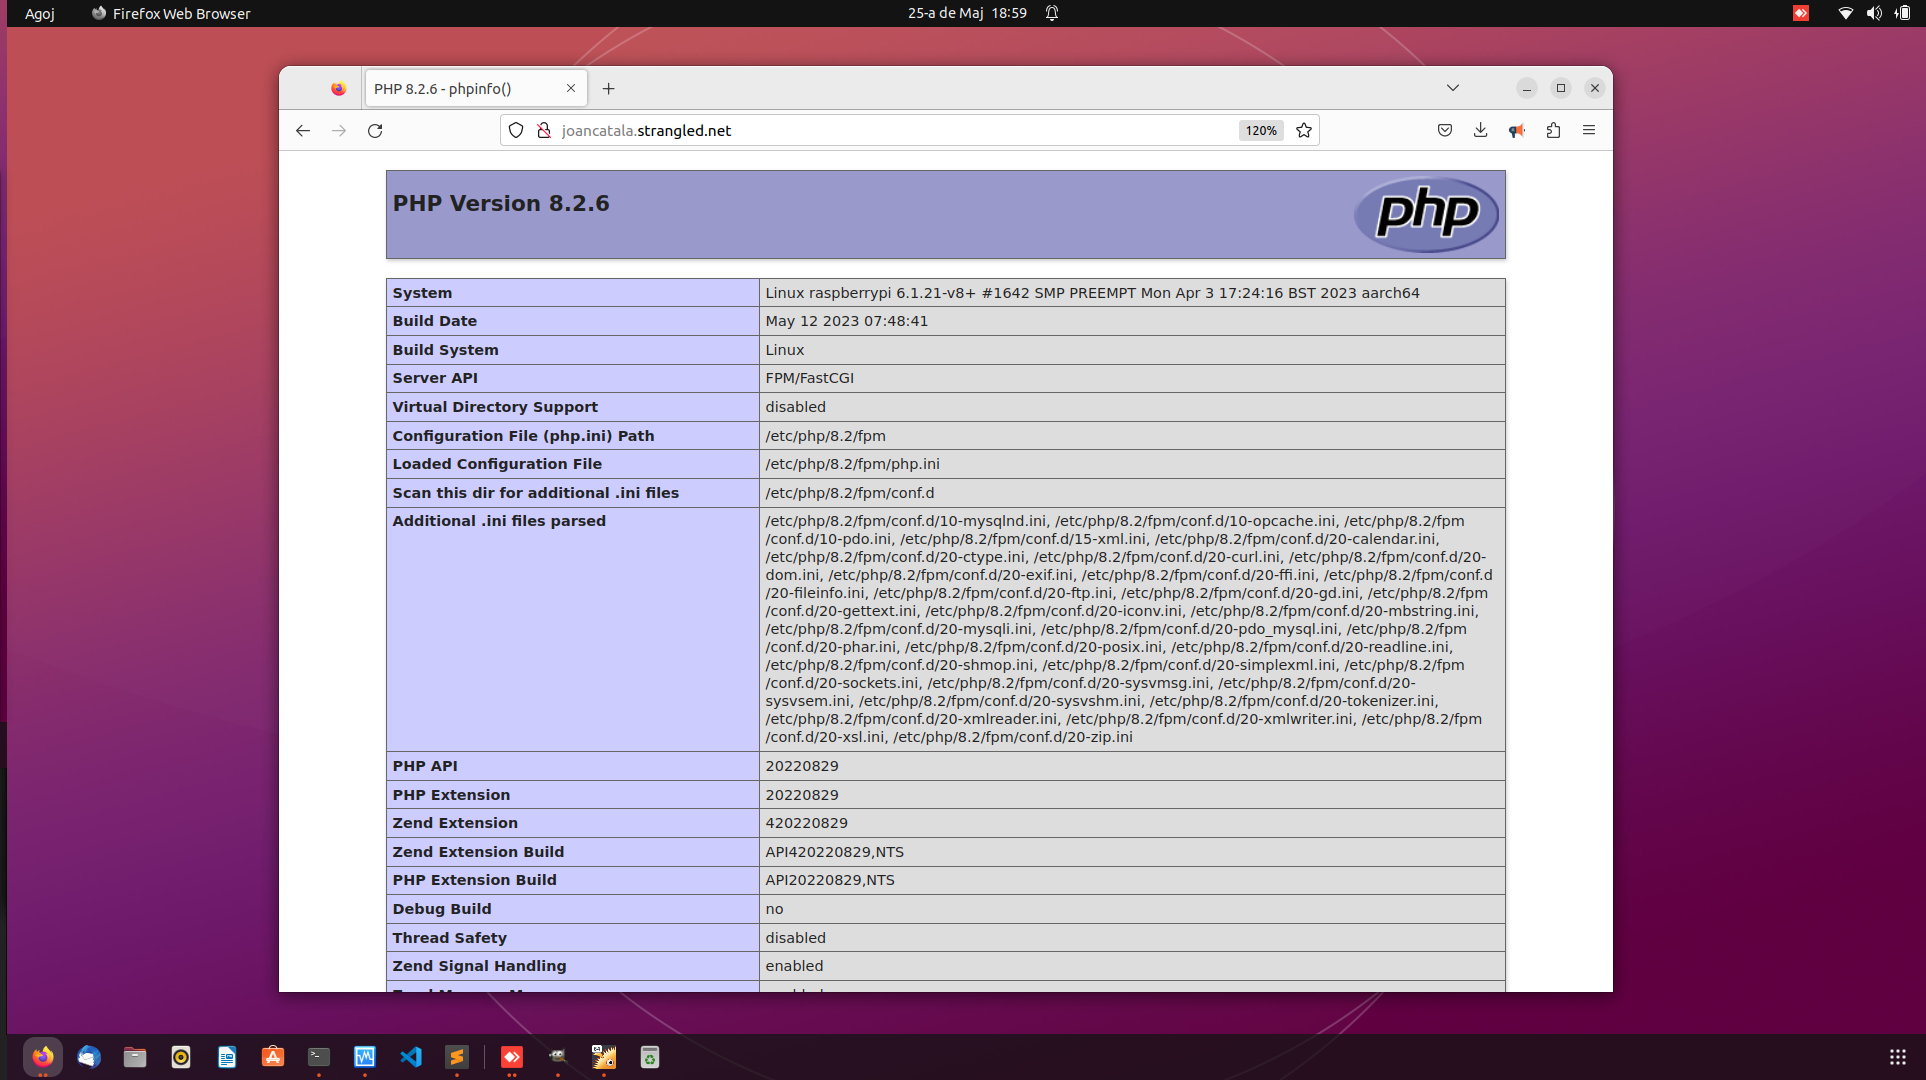 Veient la configuració i variables de PHP 8.2